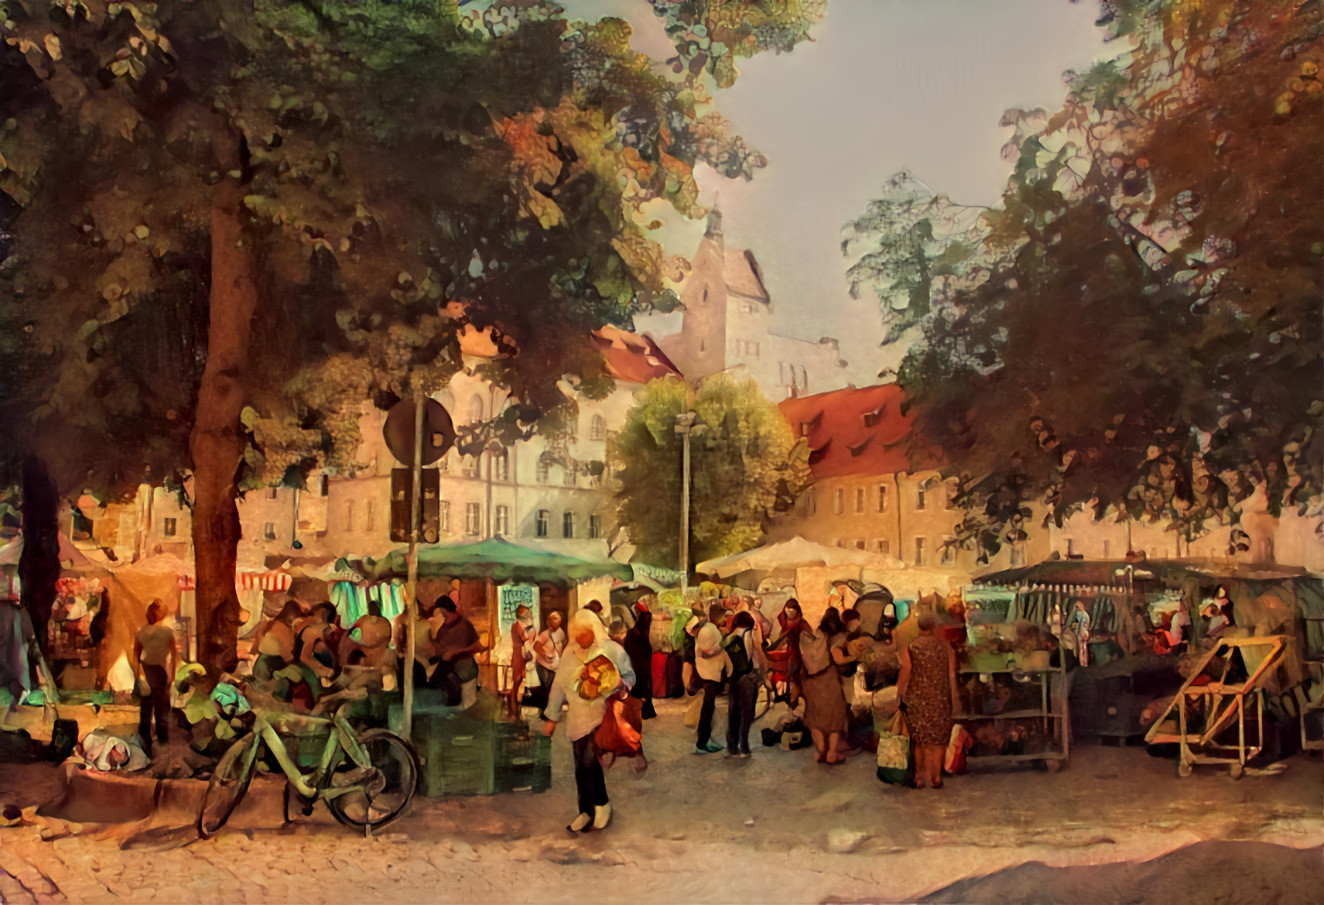 Weekly market in Regensburg